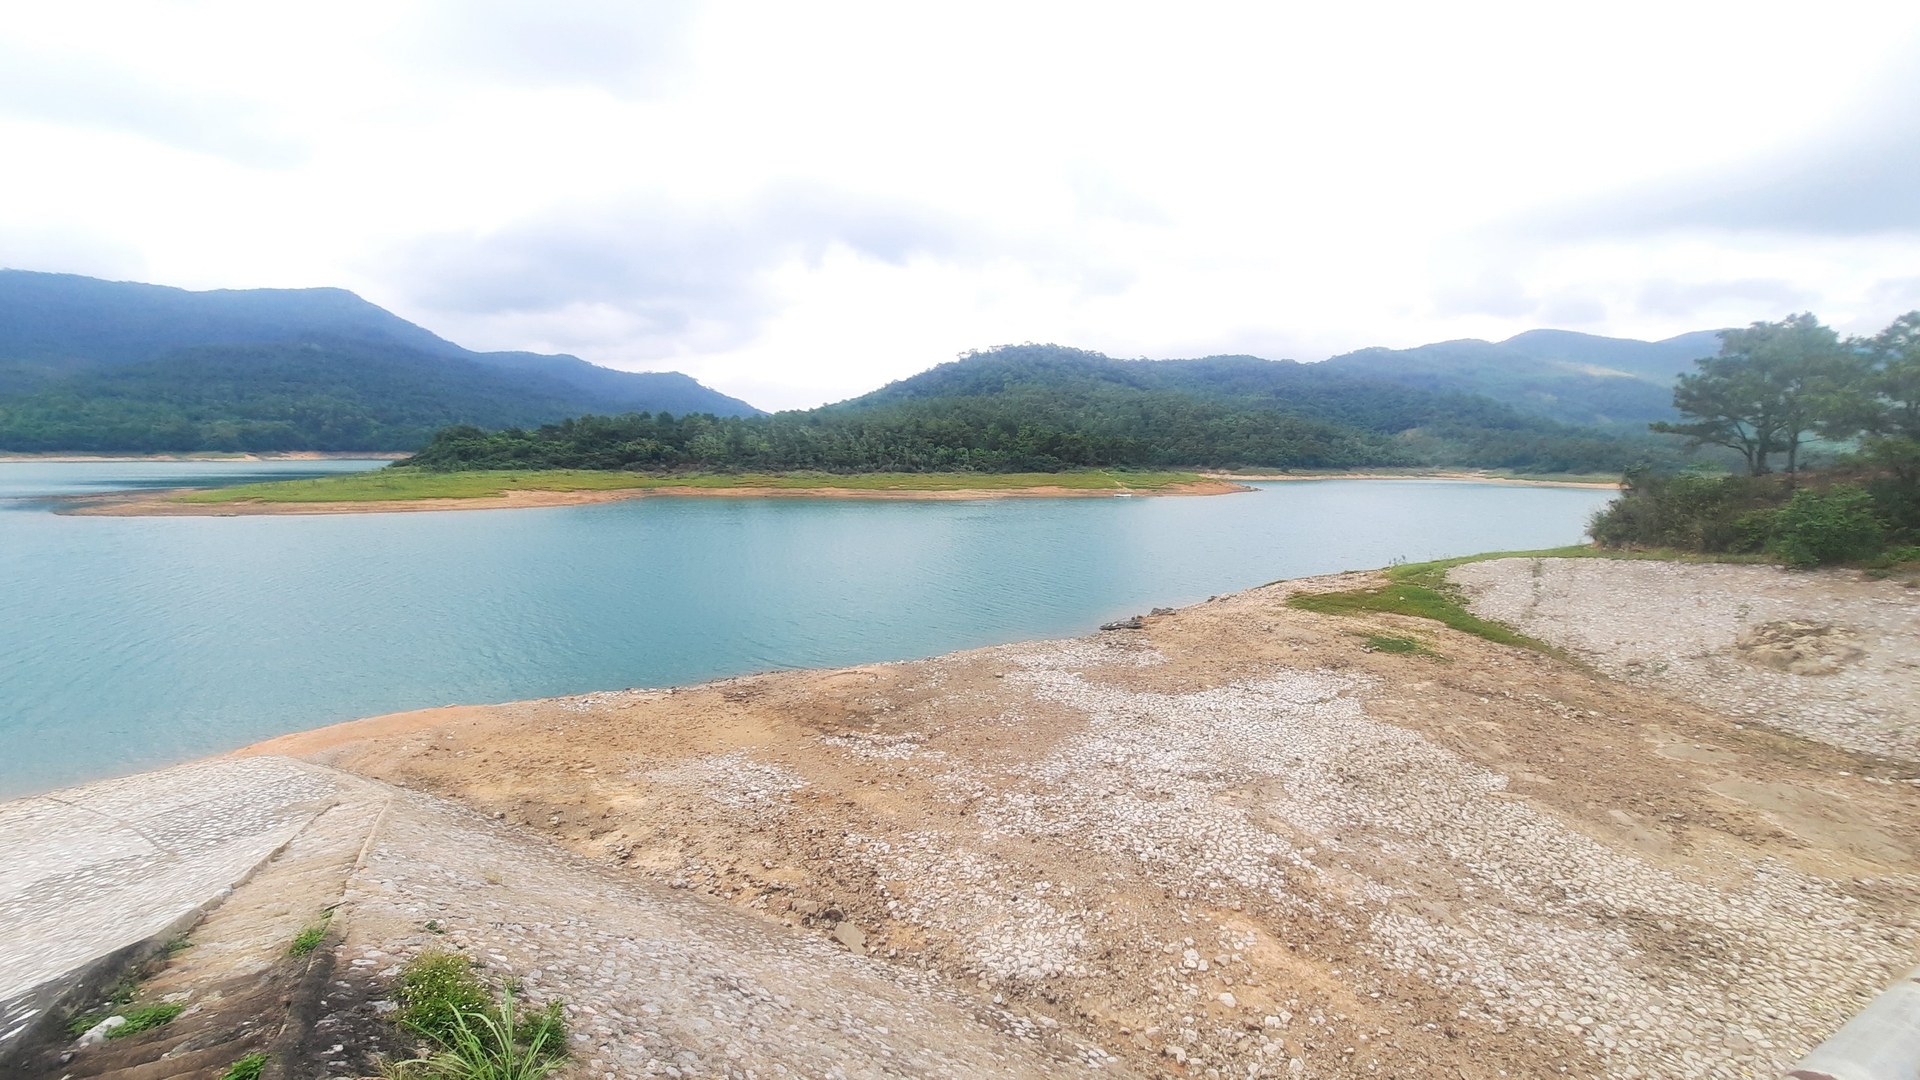 Mực nước tại hồ Yên Lập đang hạ xuống còn 21,1m, thấp so với cùng kỳ năm ngoái 1,9m. Ảnh: Nguyễn Thành.